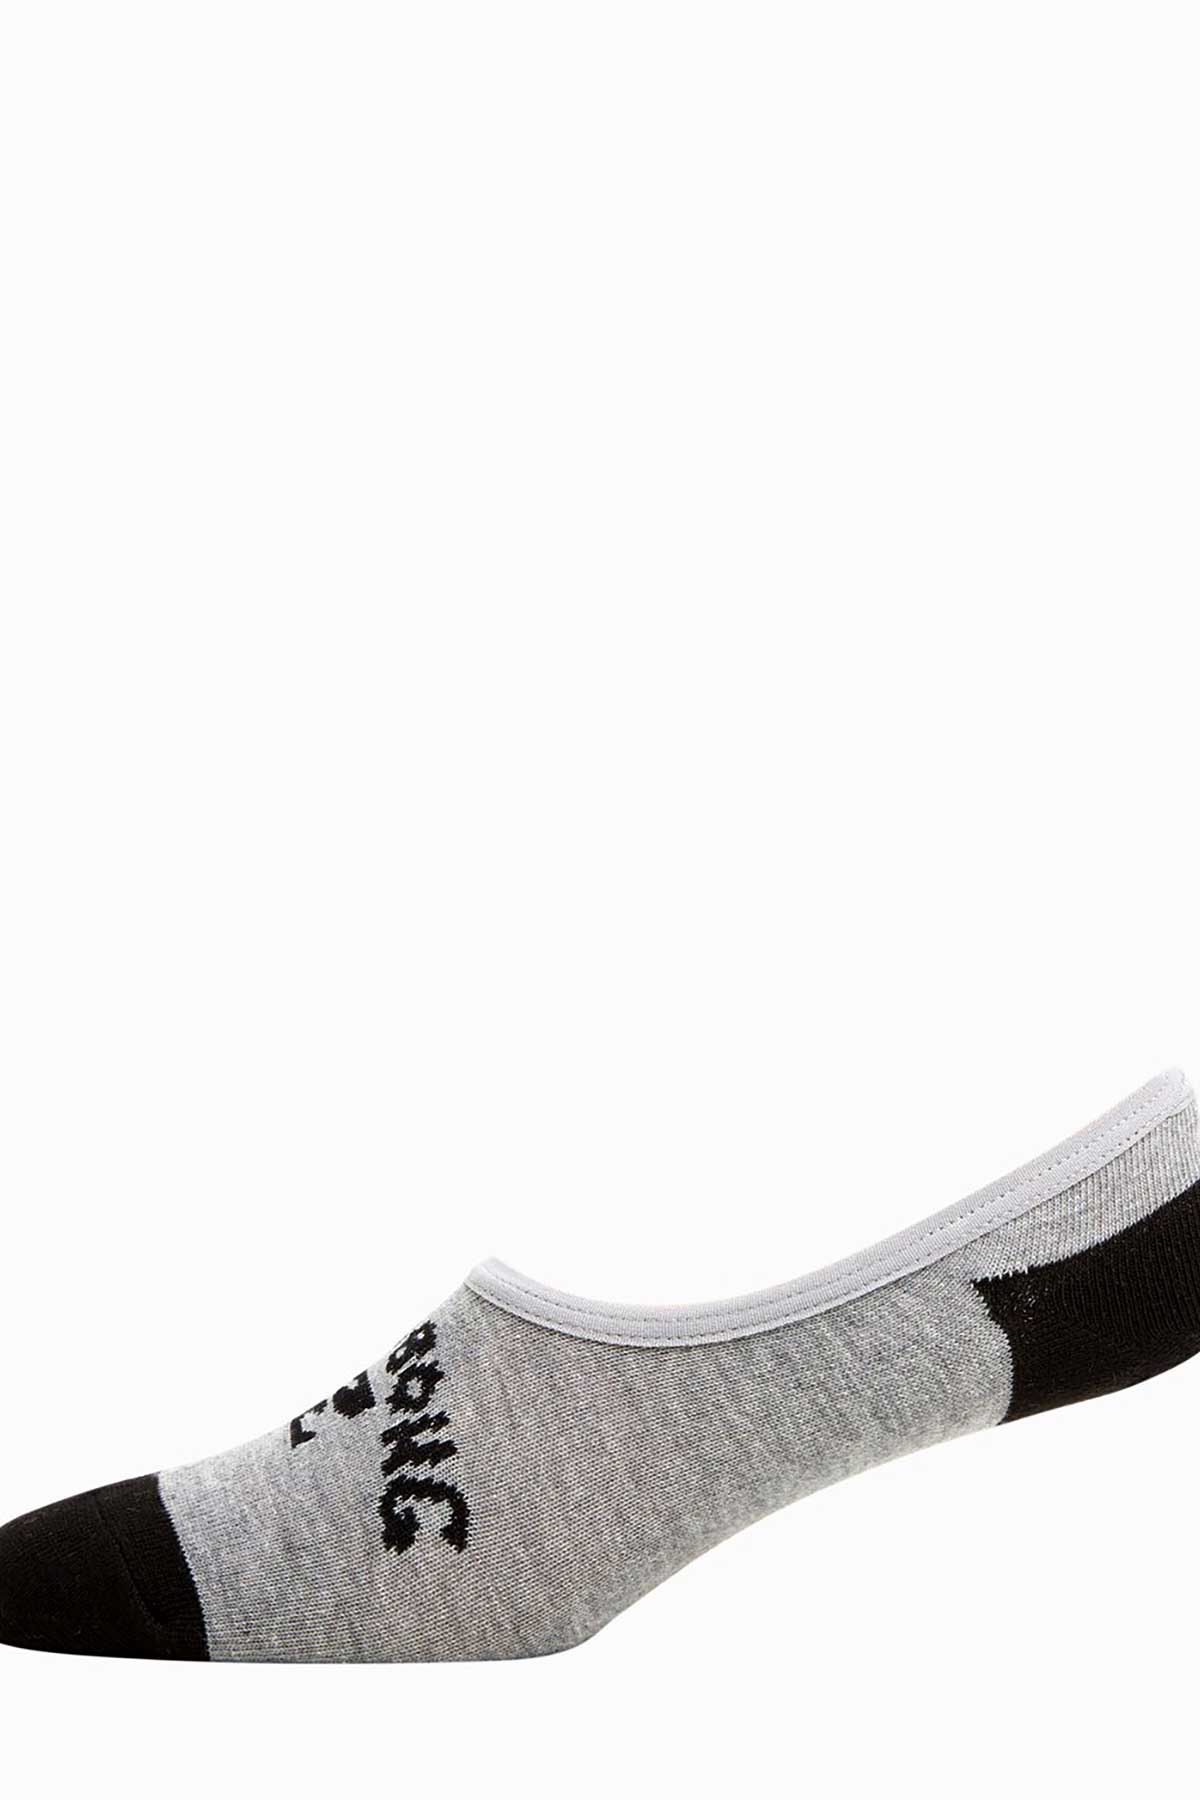 Billabong Invisible Socks 5 Pack, Grey and Black.